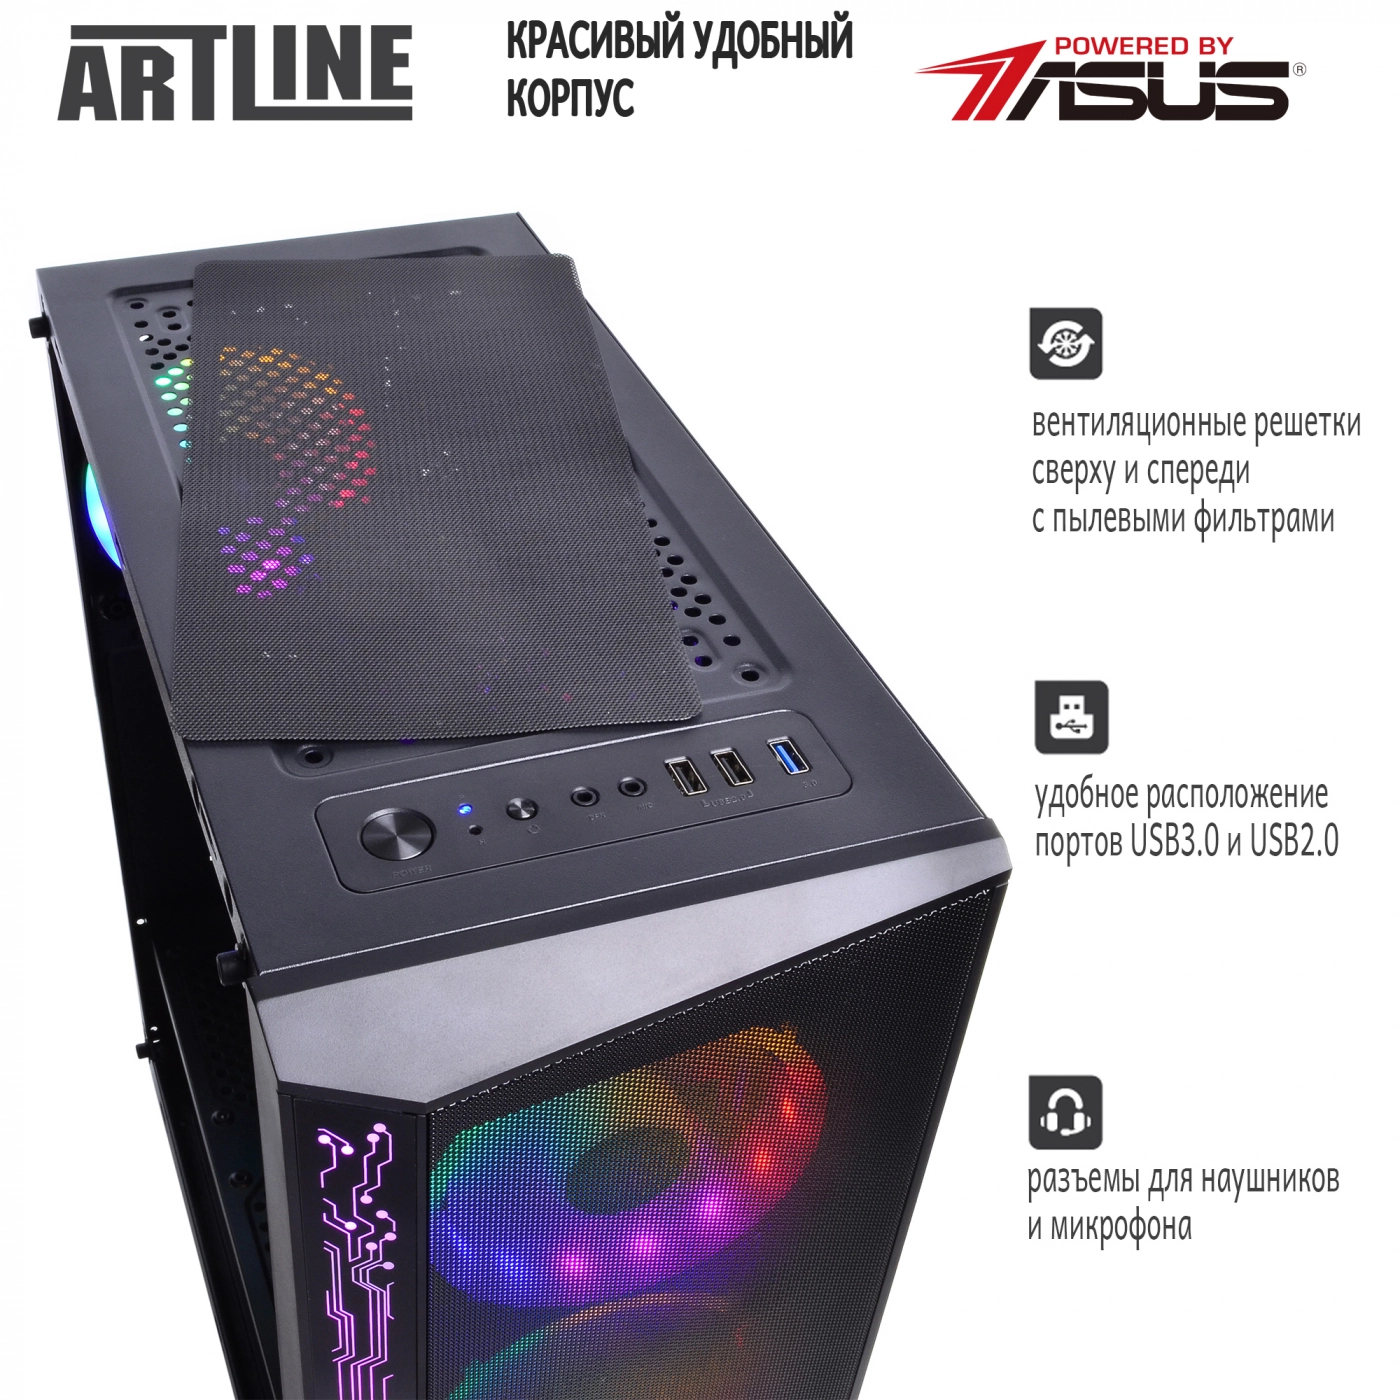 Купить Компьютер ARTLINE Gaming X51v14 - фото 4